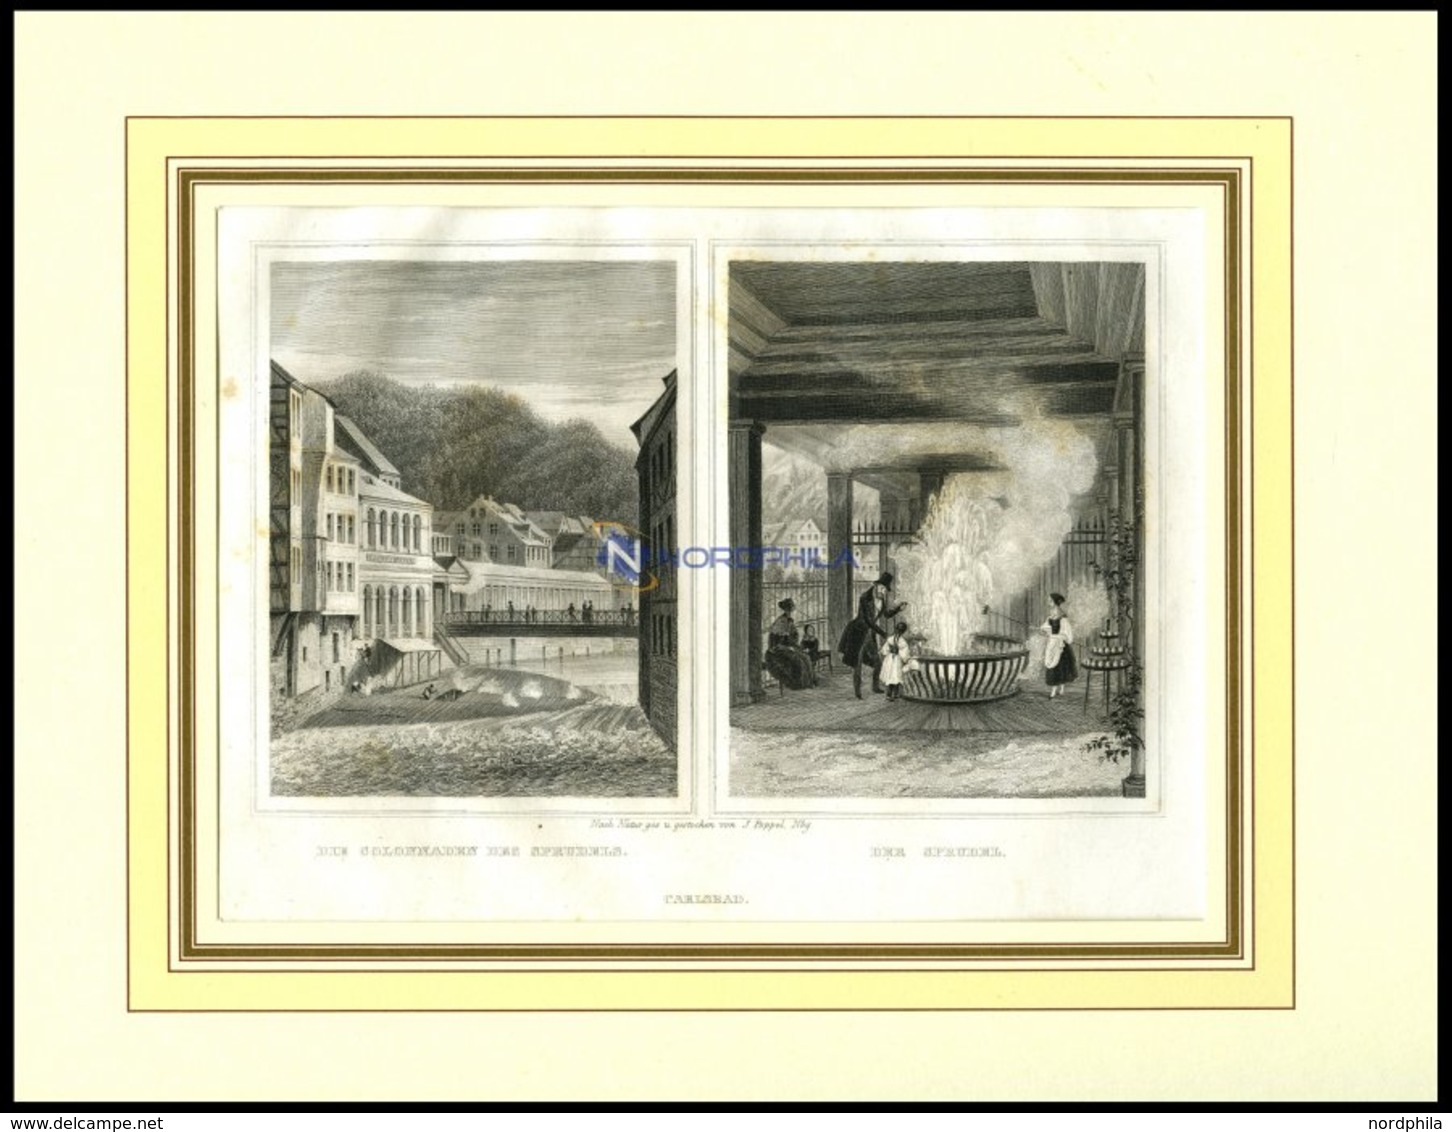 KARLSBAD: Die Colonnaden Des Sprudels Und Der Sprudel, 2 Ansichten Auf Einem Blatt, Stahlstich Von Poppel, 1840 - Litografía